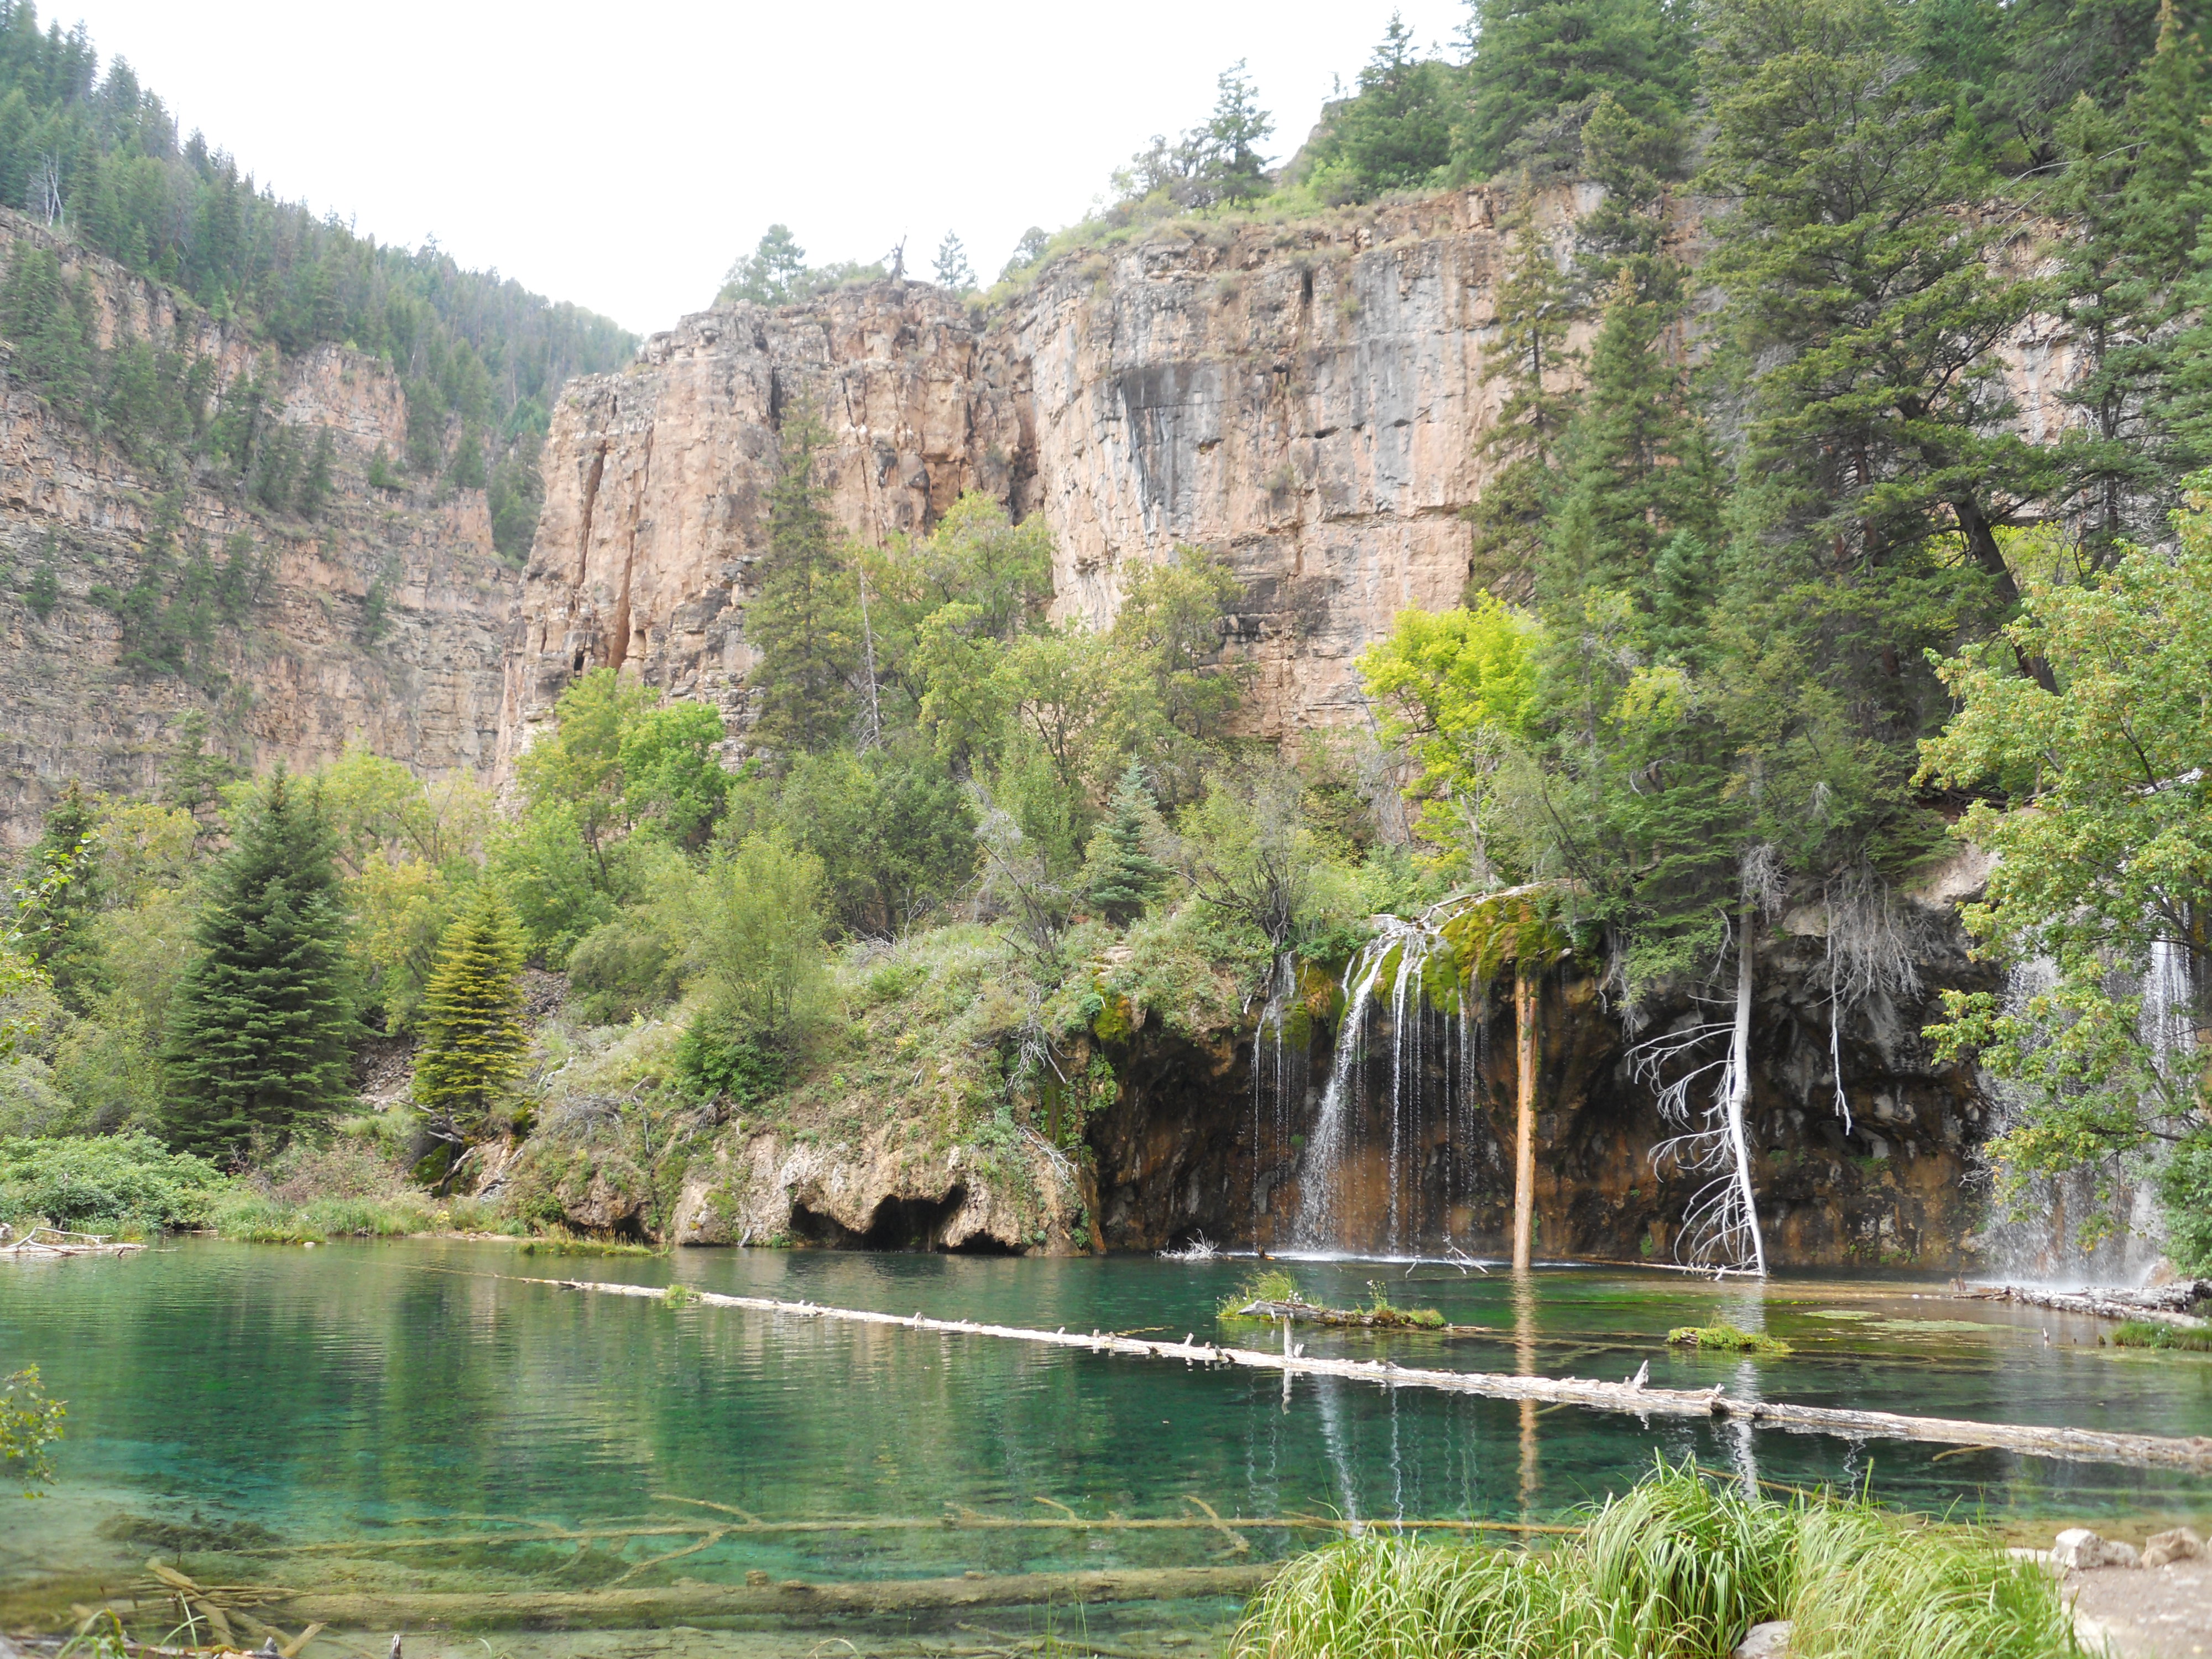 Hanging Lake Glenwood Canyon, Colorado. Blue water in lake next to mountain cliffs.